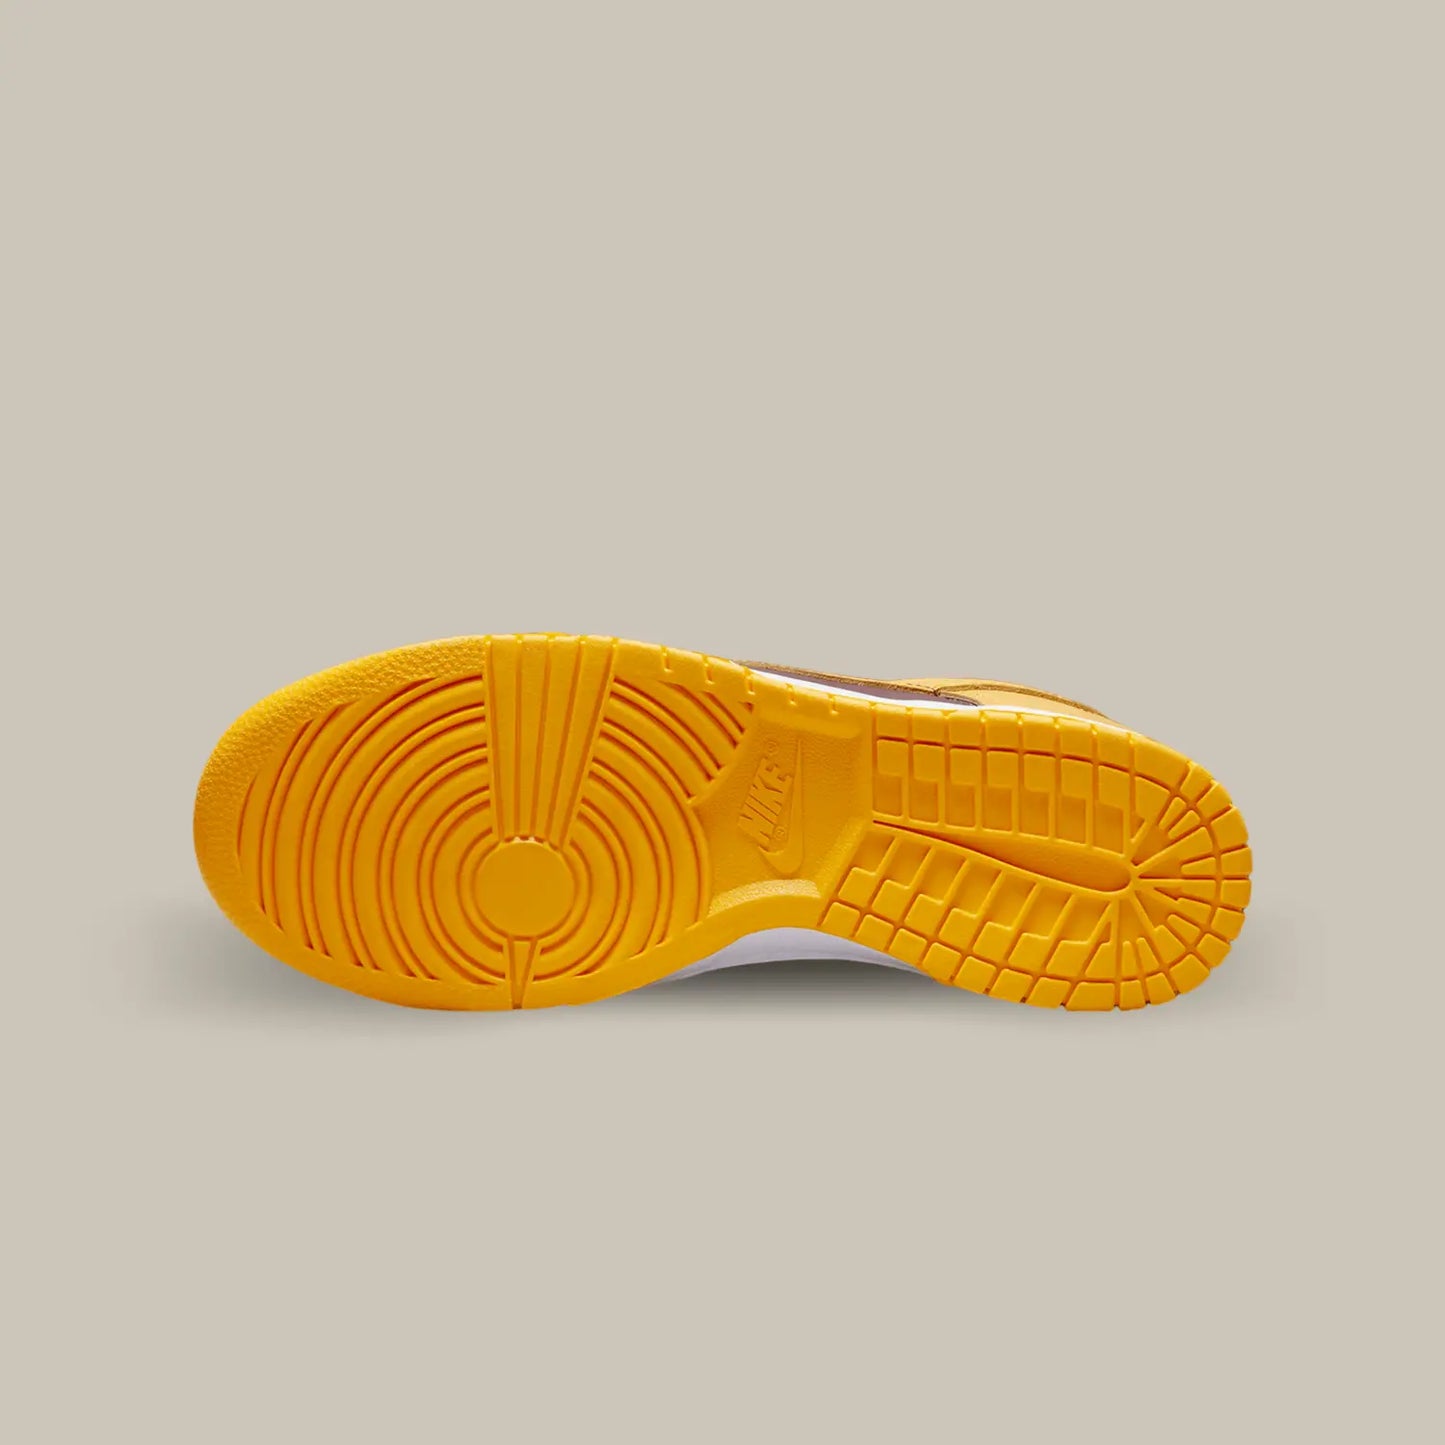 La semelle de la Nike Dunk Low Arizona State de couleur jaune.